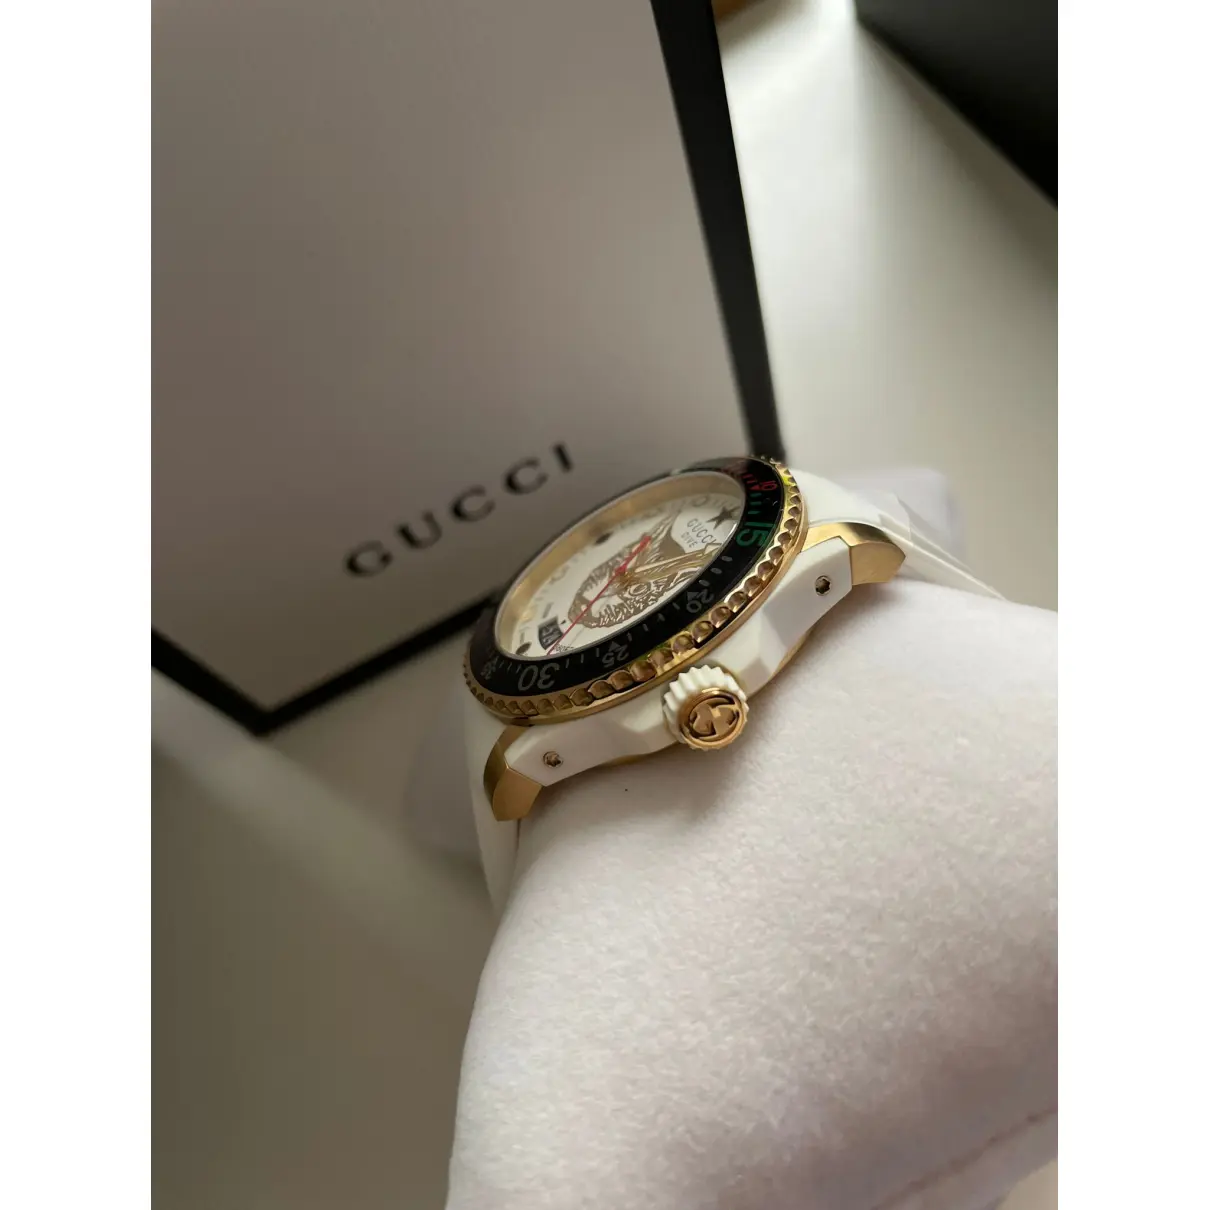 Luxury Gucci Watches Men